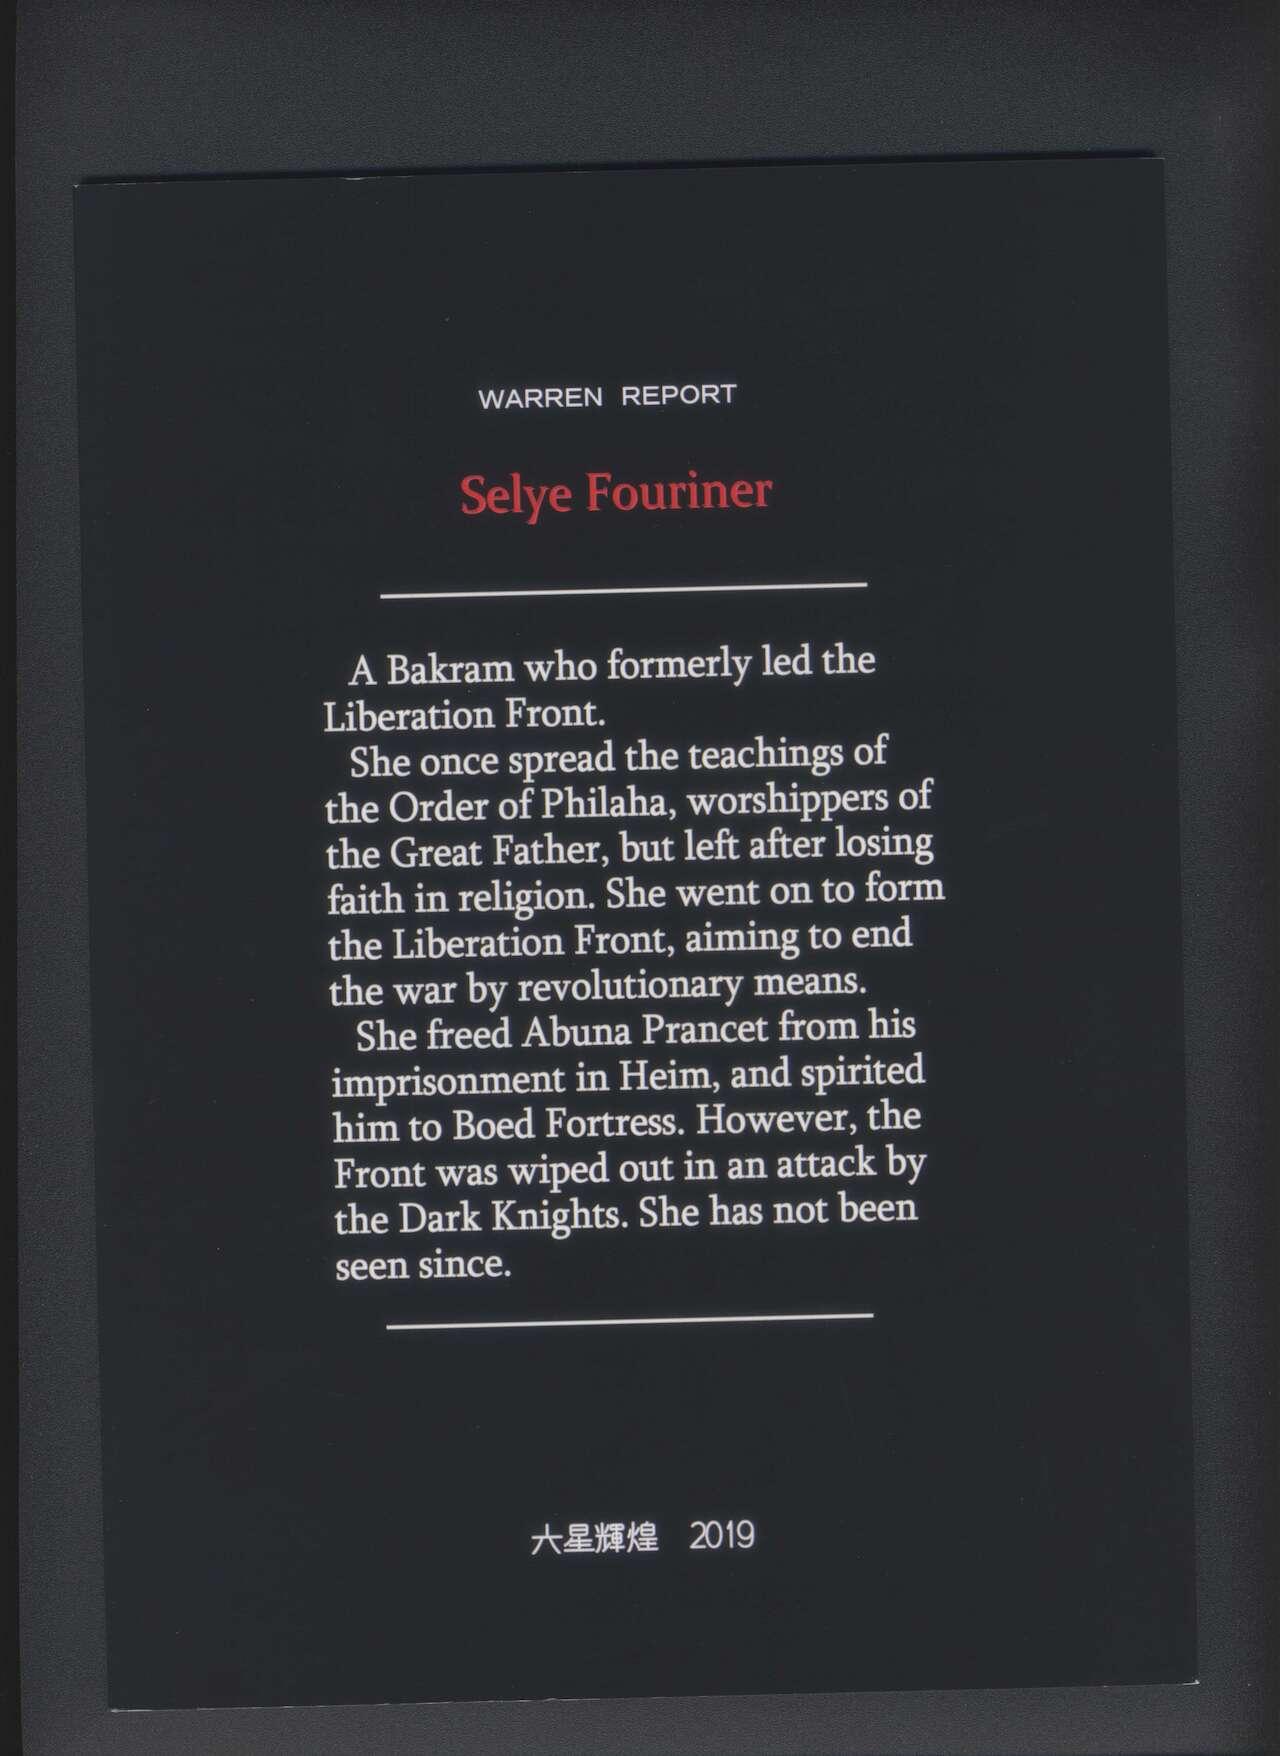 WARREN REPORT Selye Fouriner 1